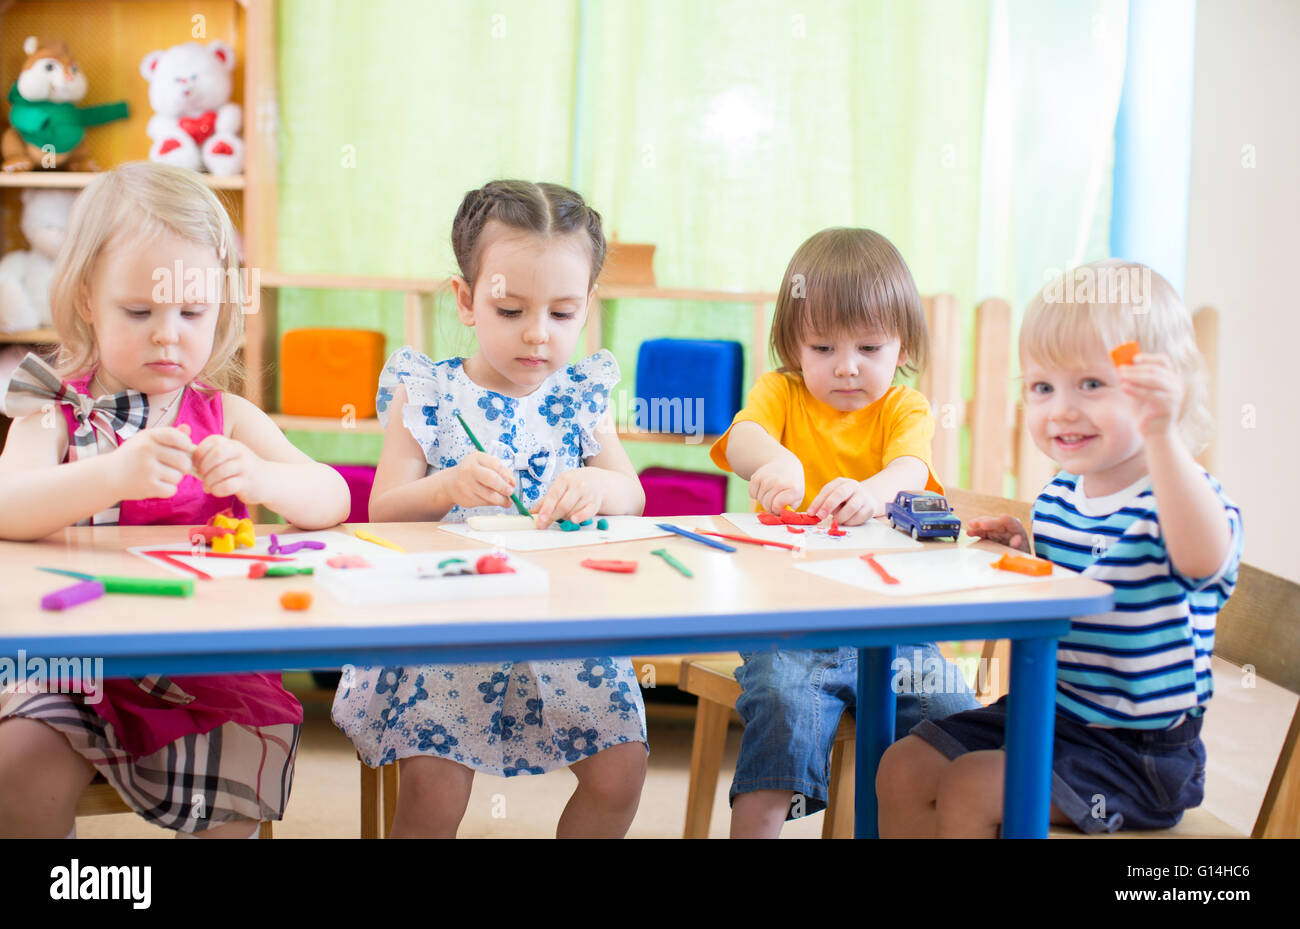 Grupo de niños aprendiendo artes y oficios en playroom con interés Foto de stock